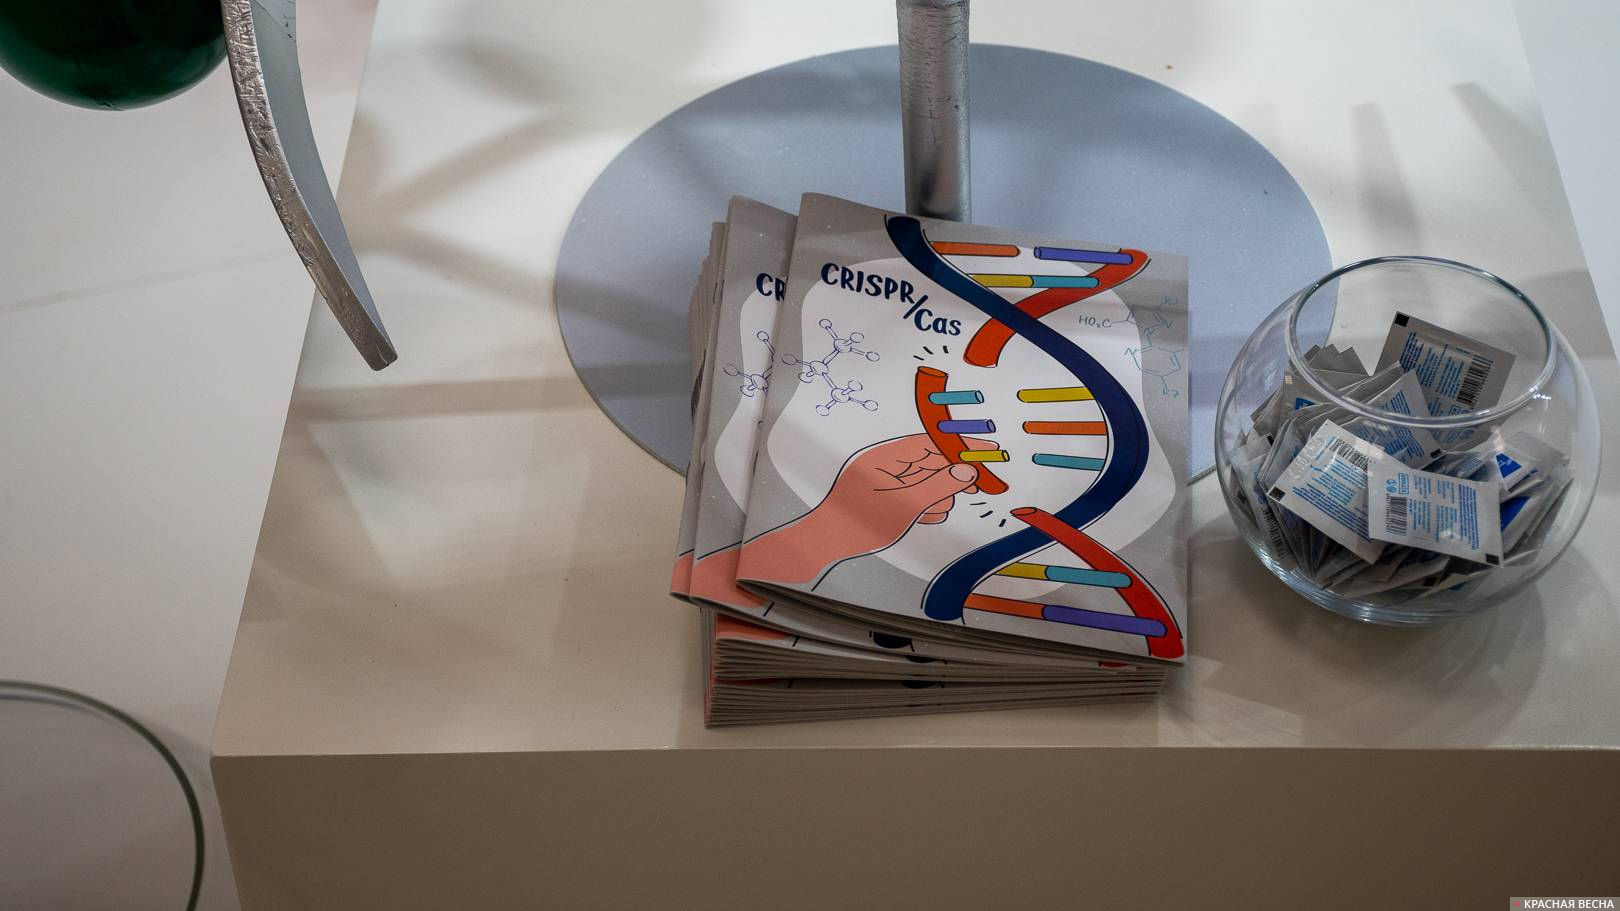 Брошюра о редактировании генома человека на стенде Роспотребнадзора, ВЭФ-2021